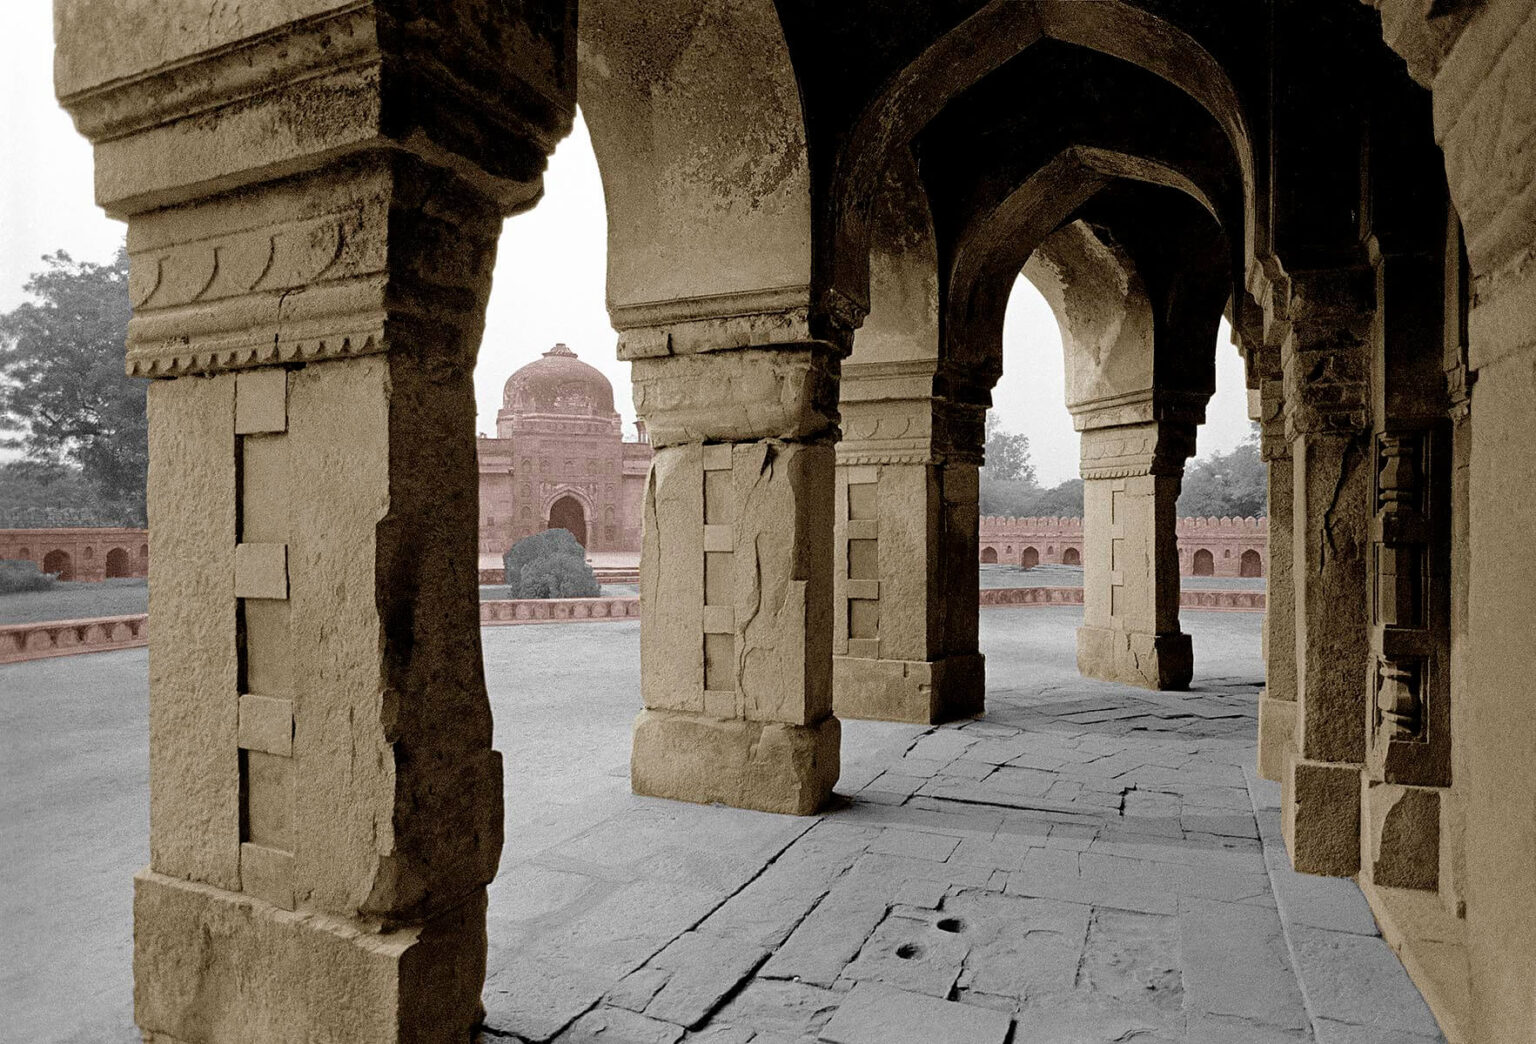 Humayan's Tomb Complex - Delhi, India